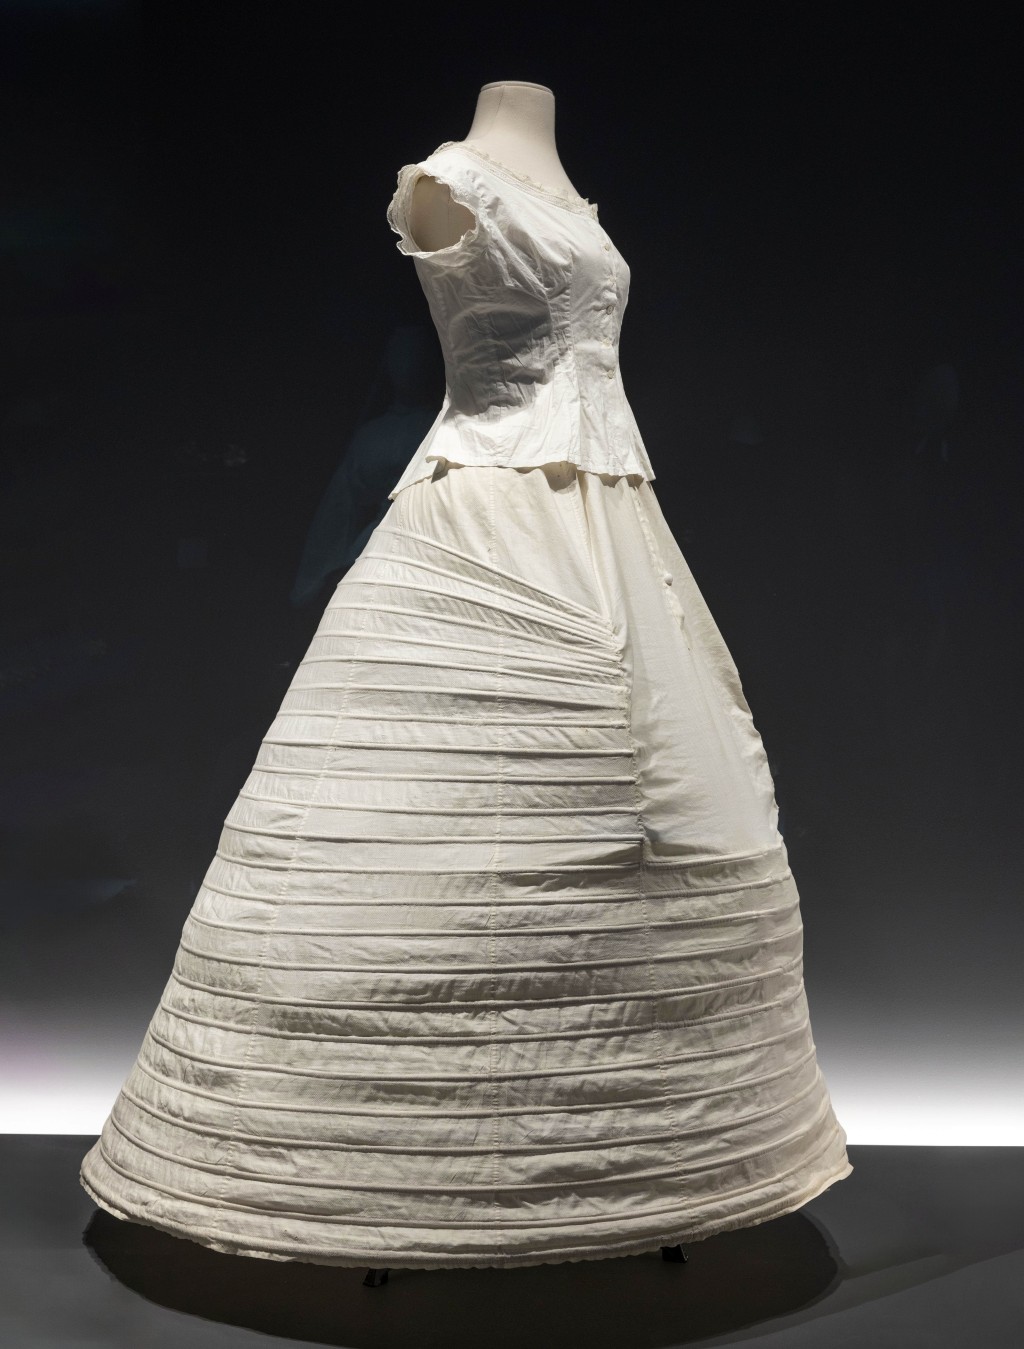 无论是束腰胸衣，还是外形如鸟笼的硬身裙撑，都是十八、十九世纪贵族女性 展示体态与身份的衣着象徵。